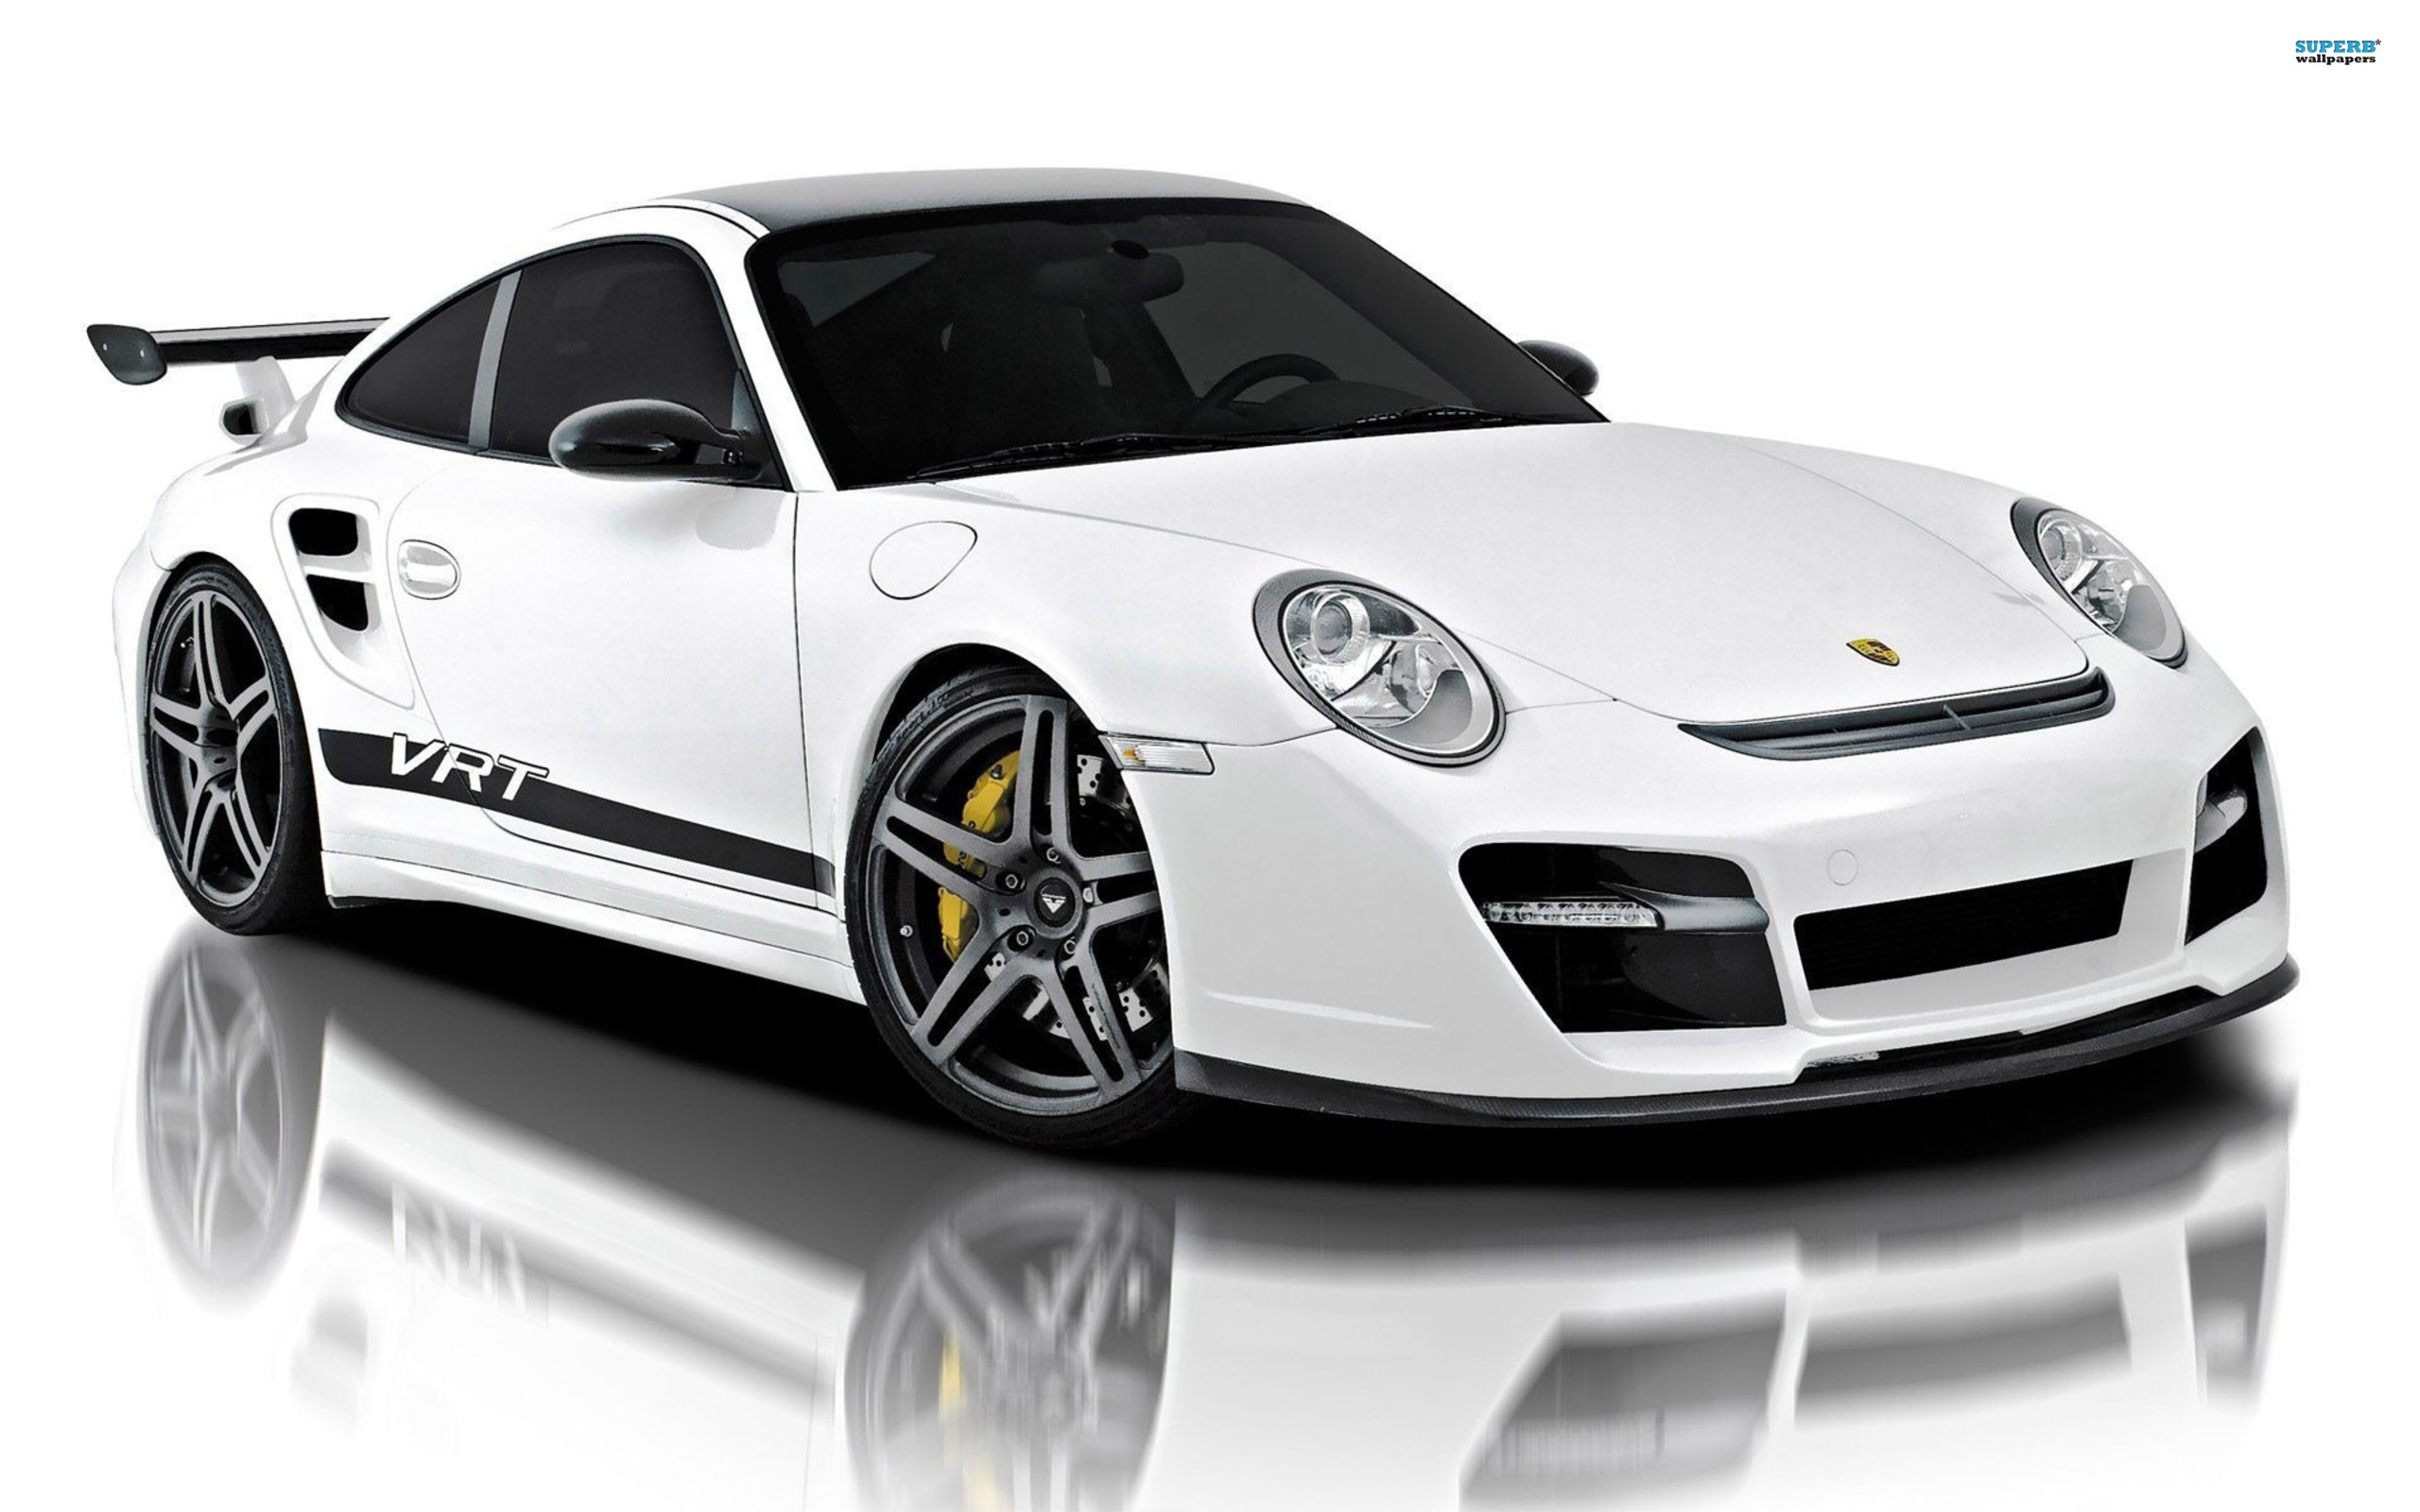 Porsche PNG Image